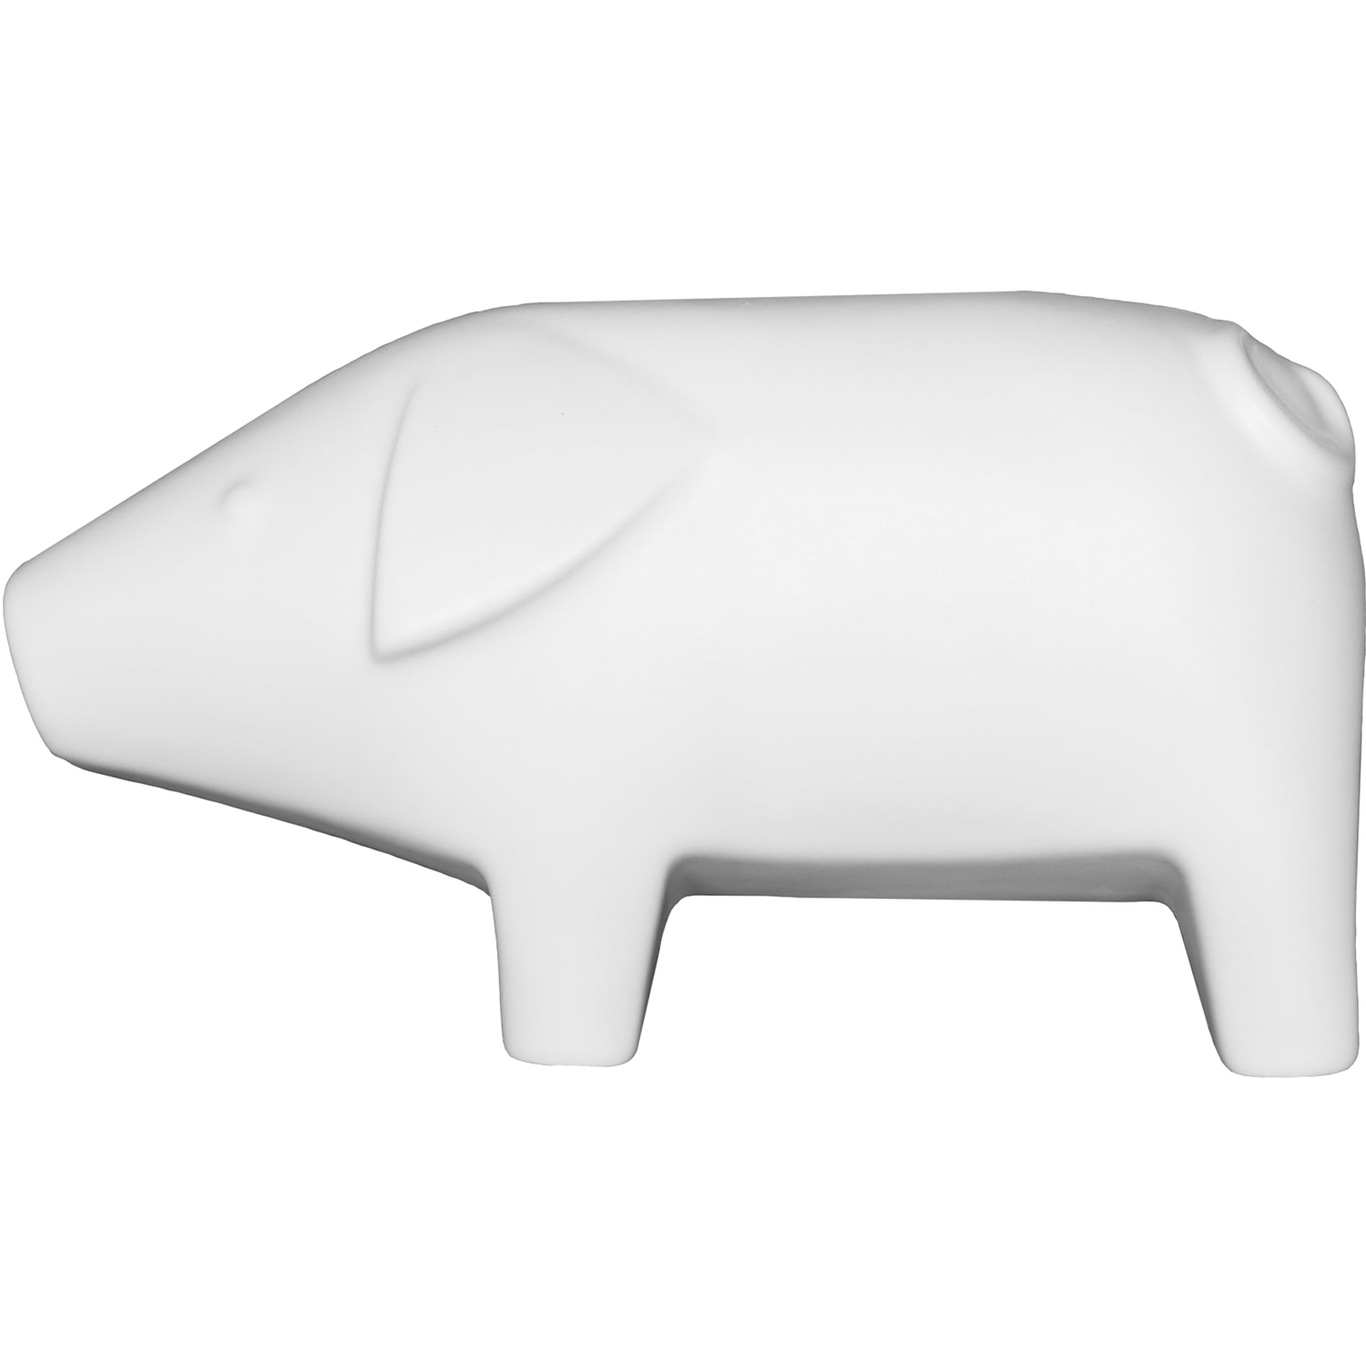 Swedish Pig Dekorasjon White, 24 cm